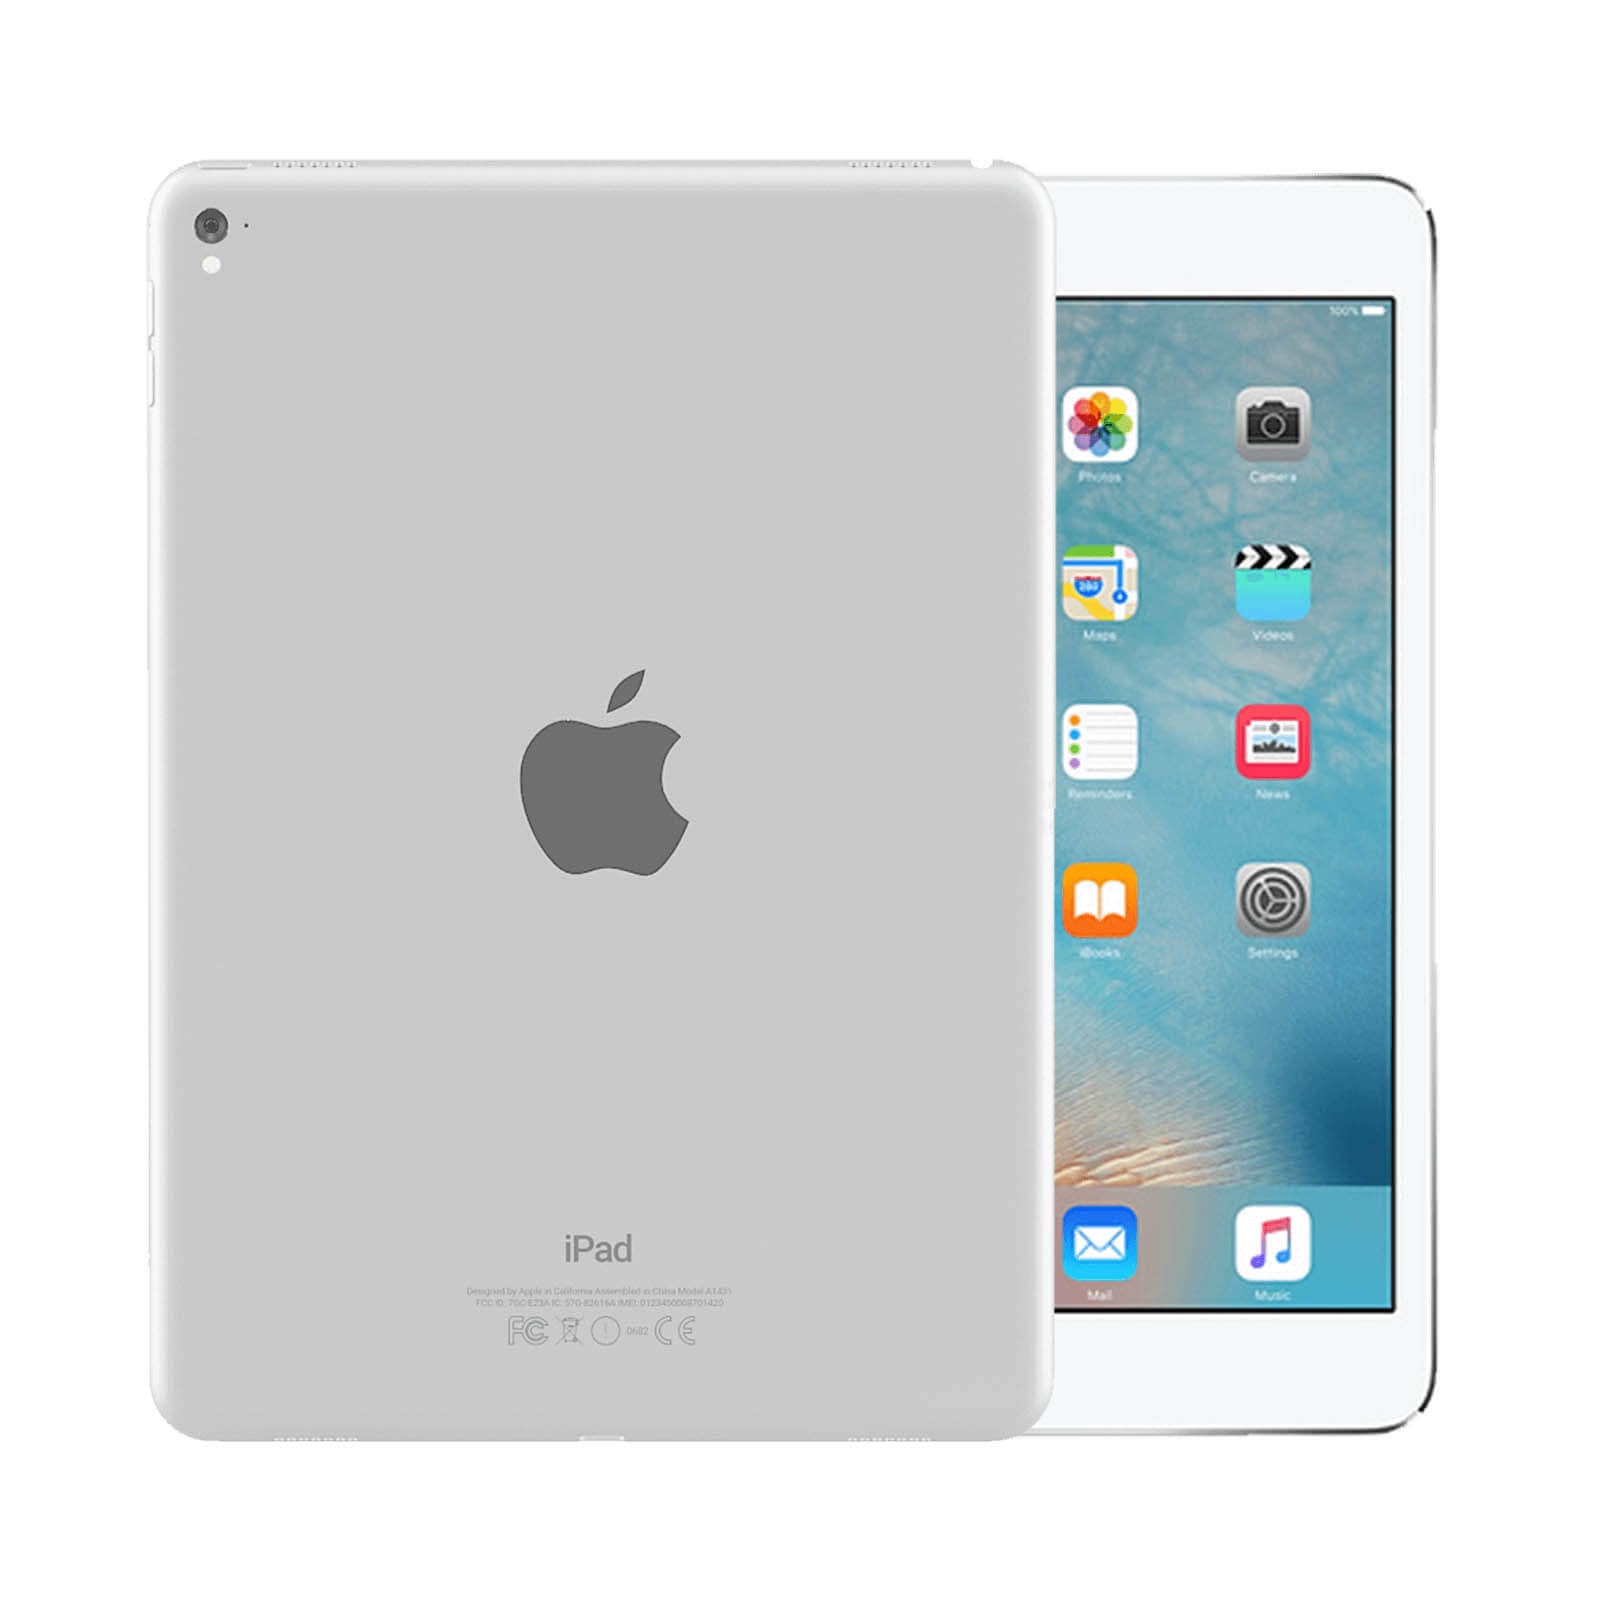 iPad Pro 9.7 Inch 128GB Silver Good - WiFi